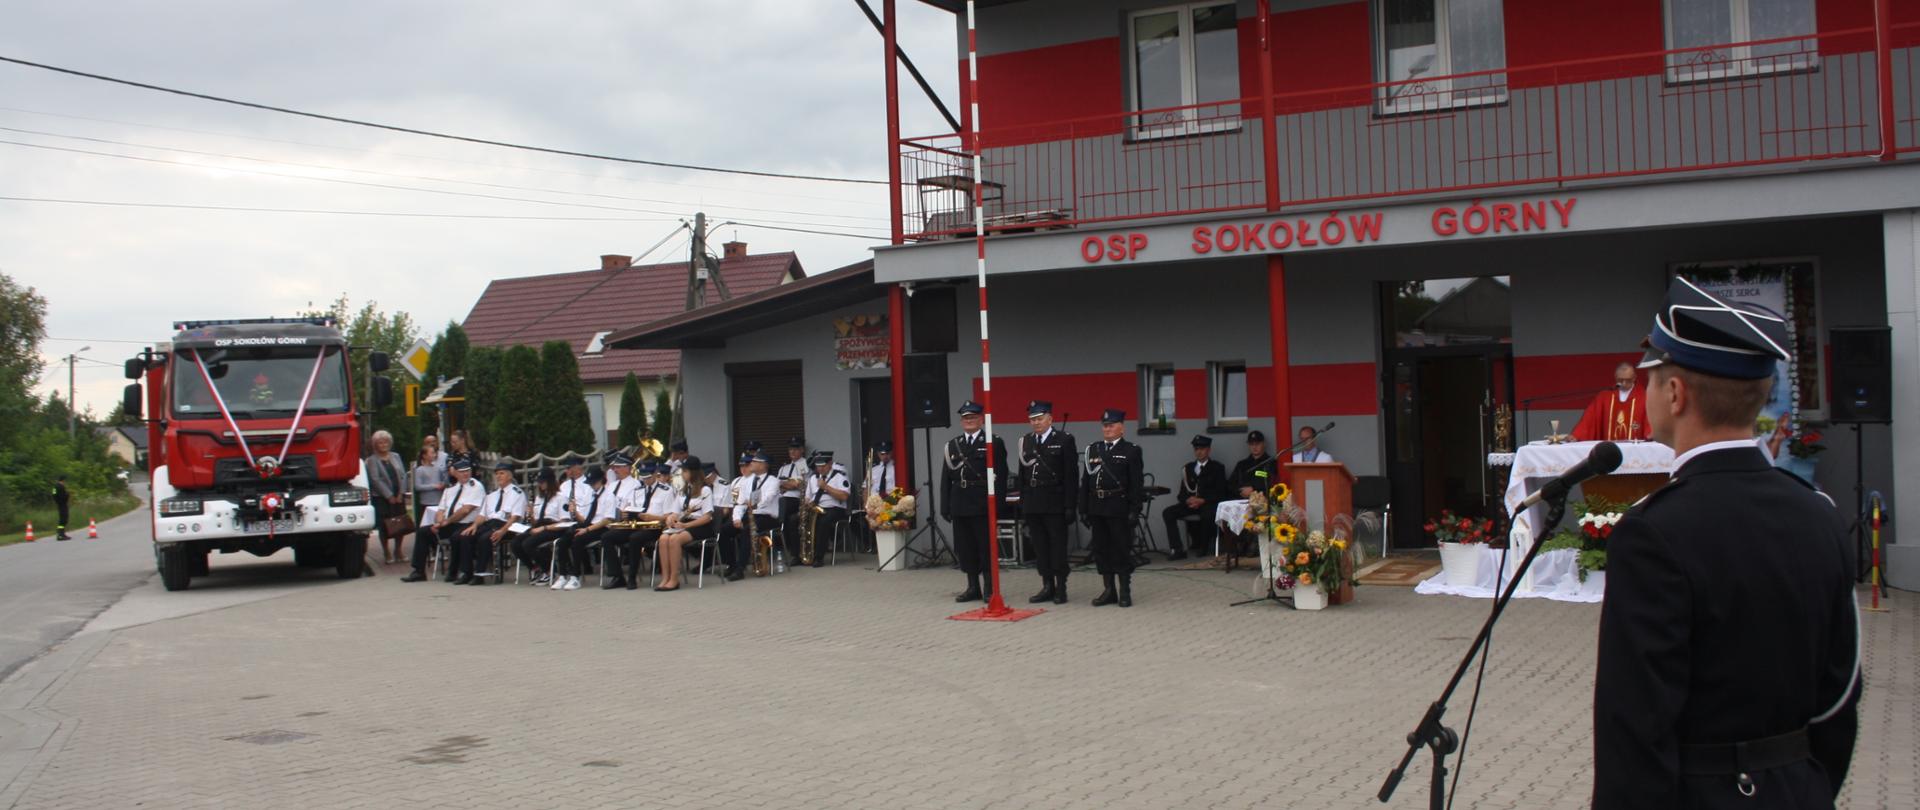 Uroczystość 40-lecia Ochotniczej Straży Pożarnej w Sokołowie Górnym i przekazania pojazdu